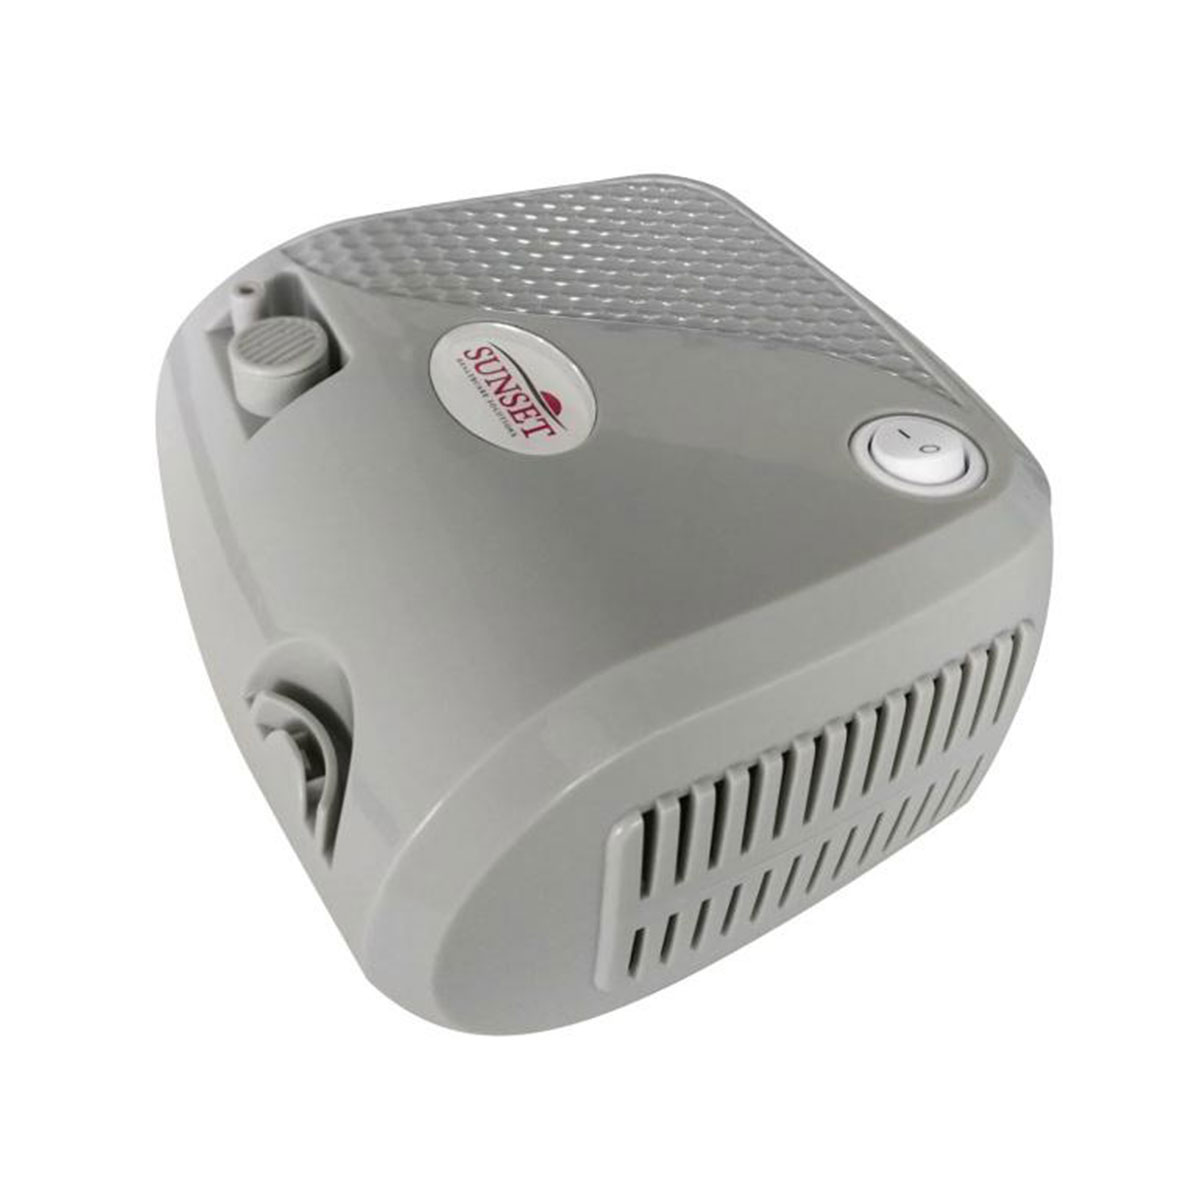 Compressor Nebulizer - Shenzhen Bi-rich Medical Device Co., Ltd